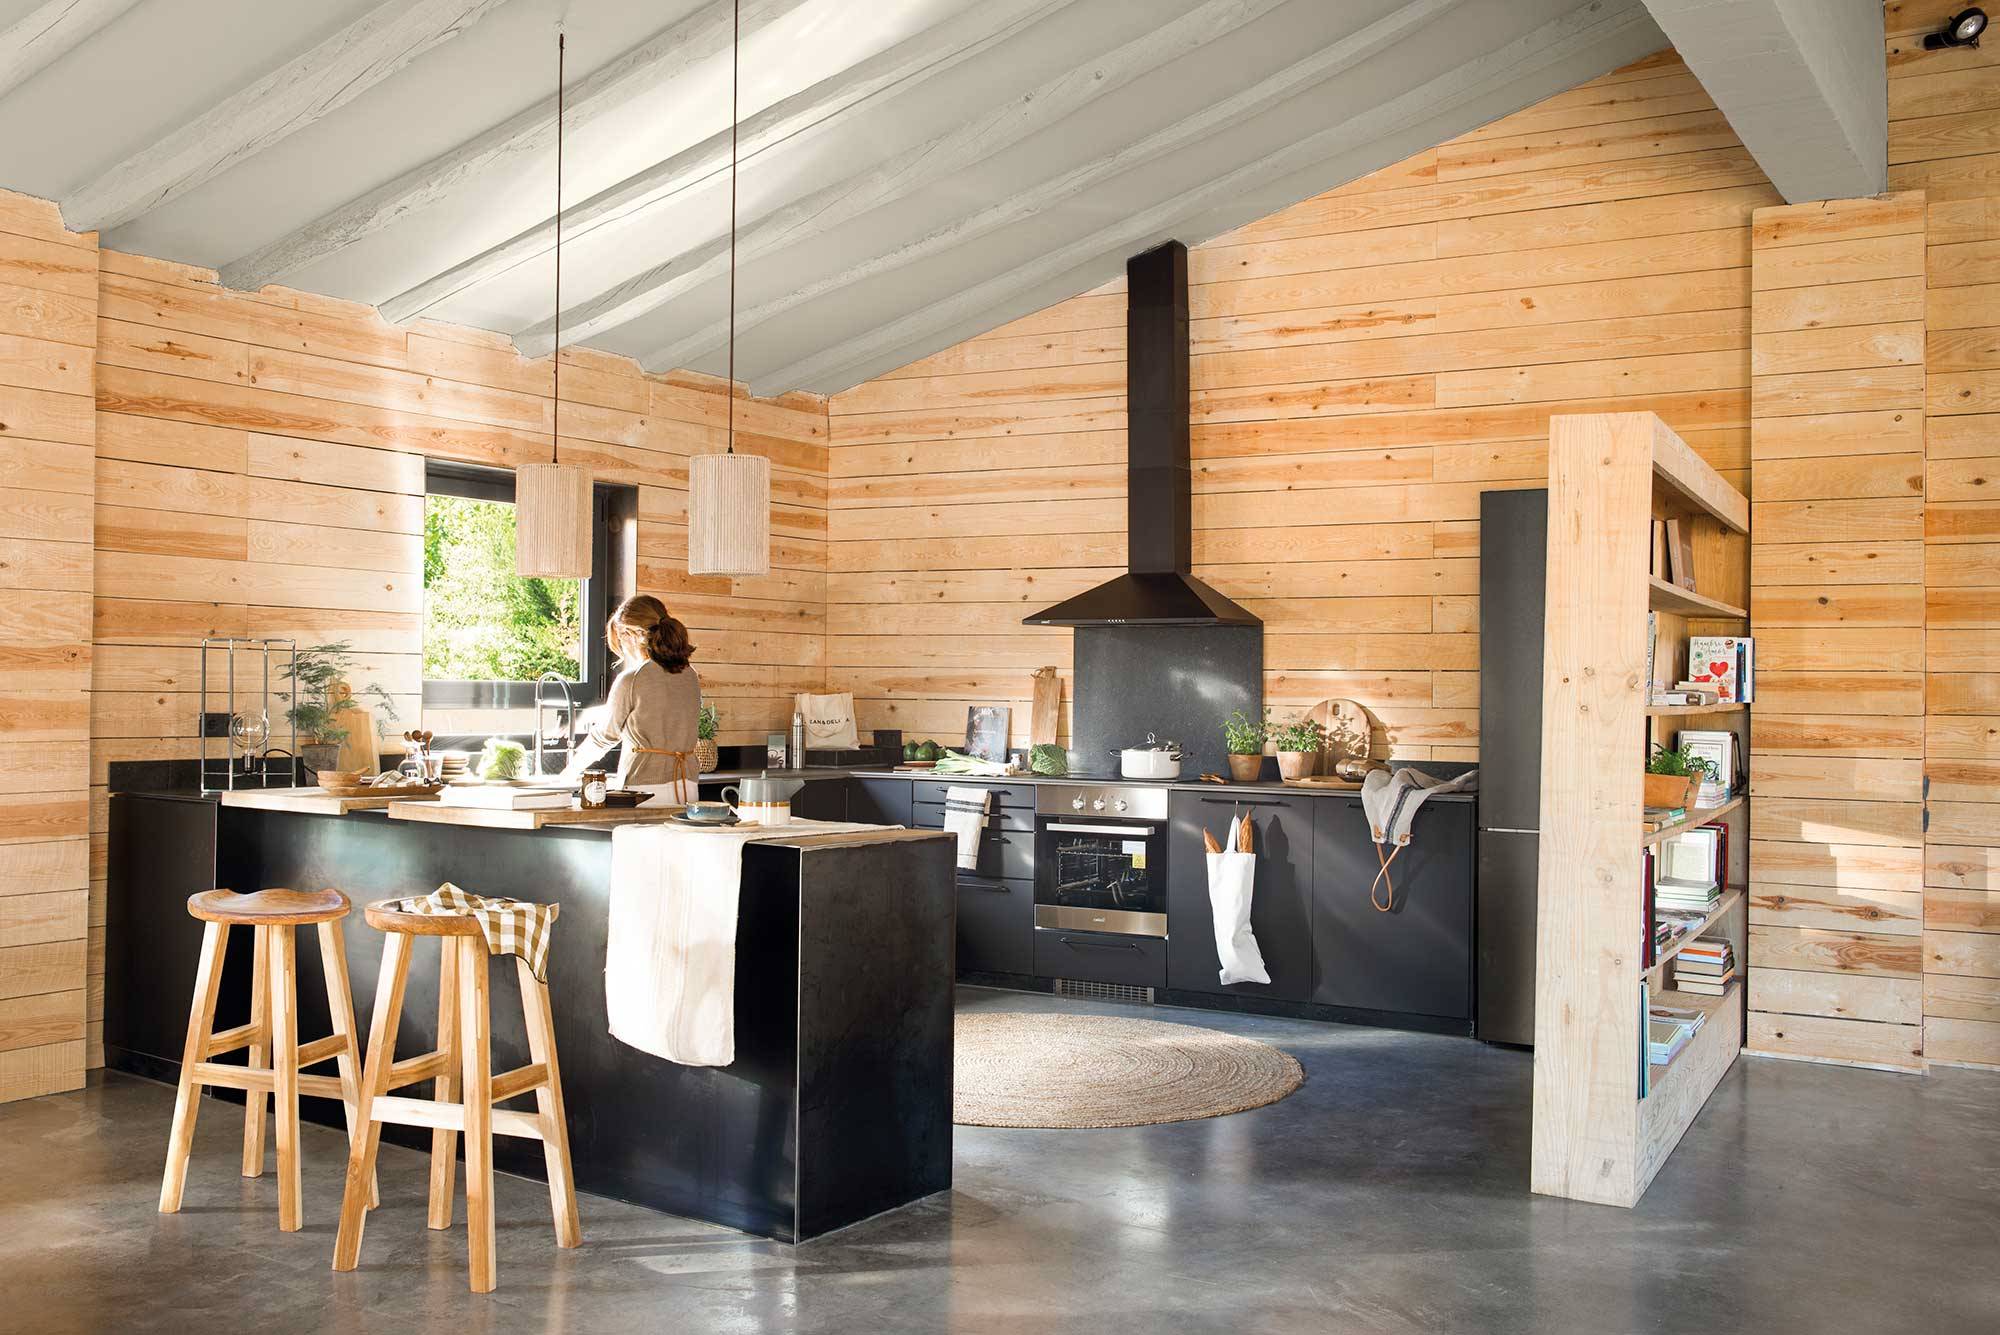 Cocina con paredes de madera y look industrial con muebles en negro.